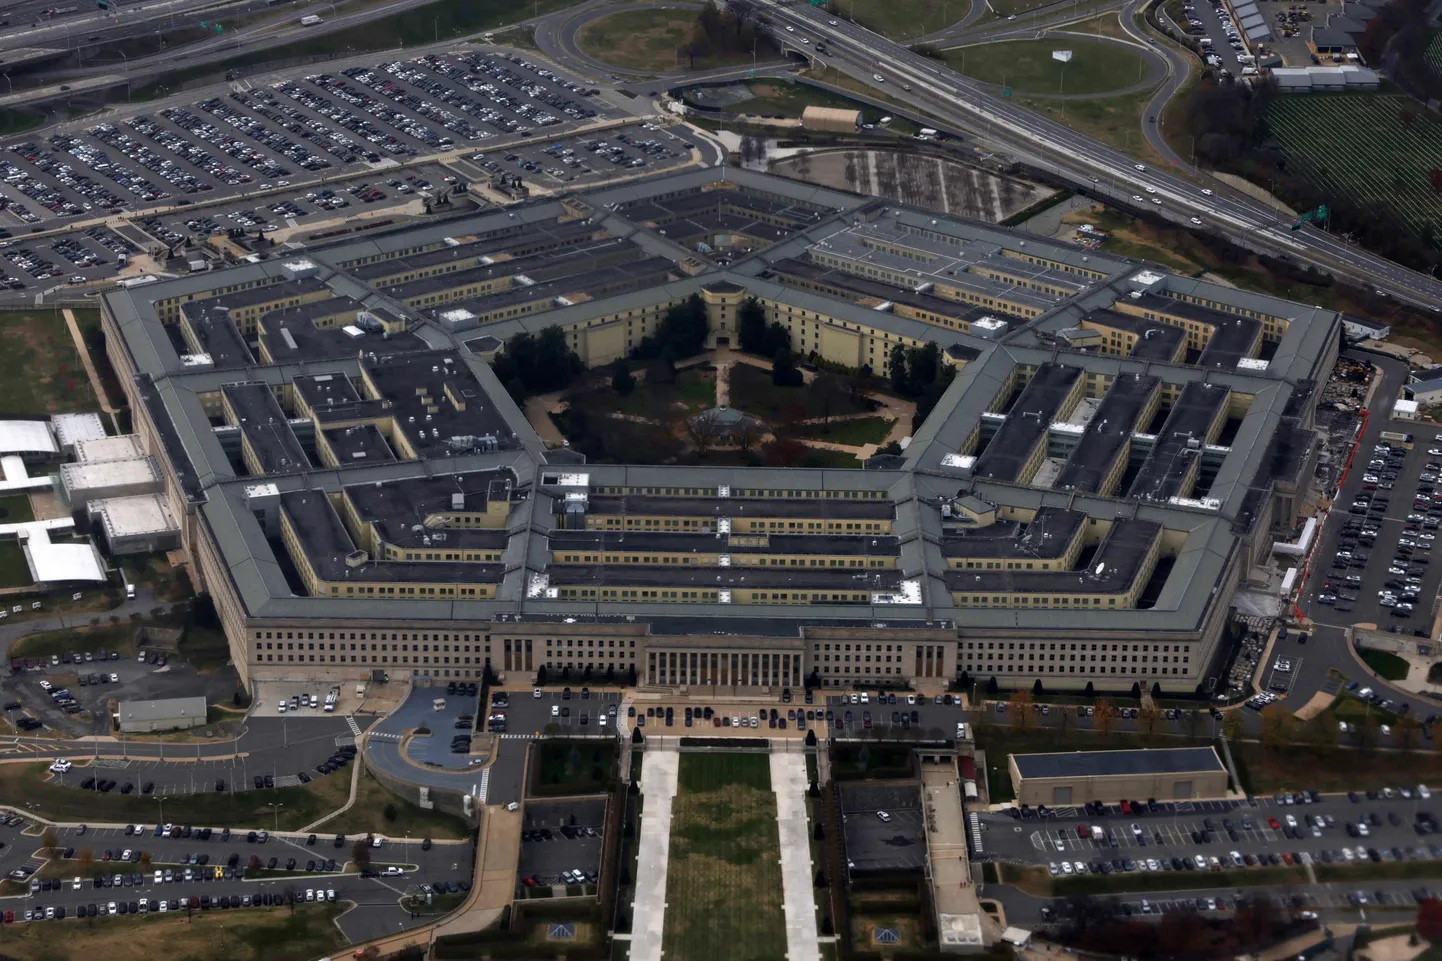 Ameerika Ühendriikide kaitseministeeriumi peakorter Pentagon